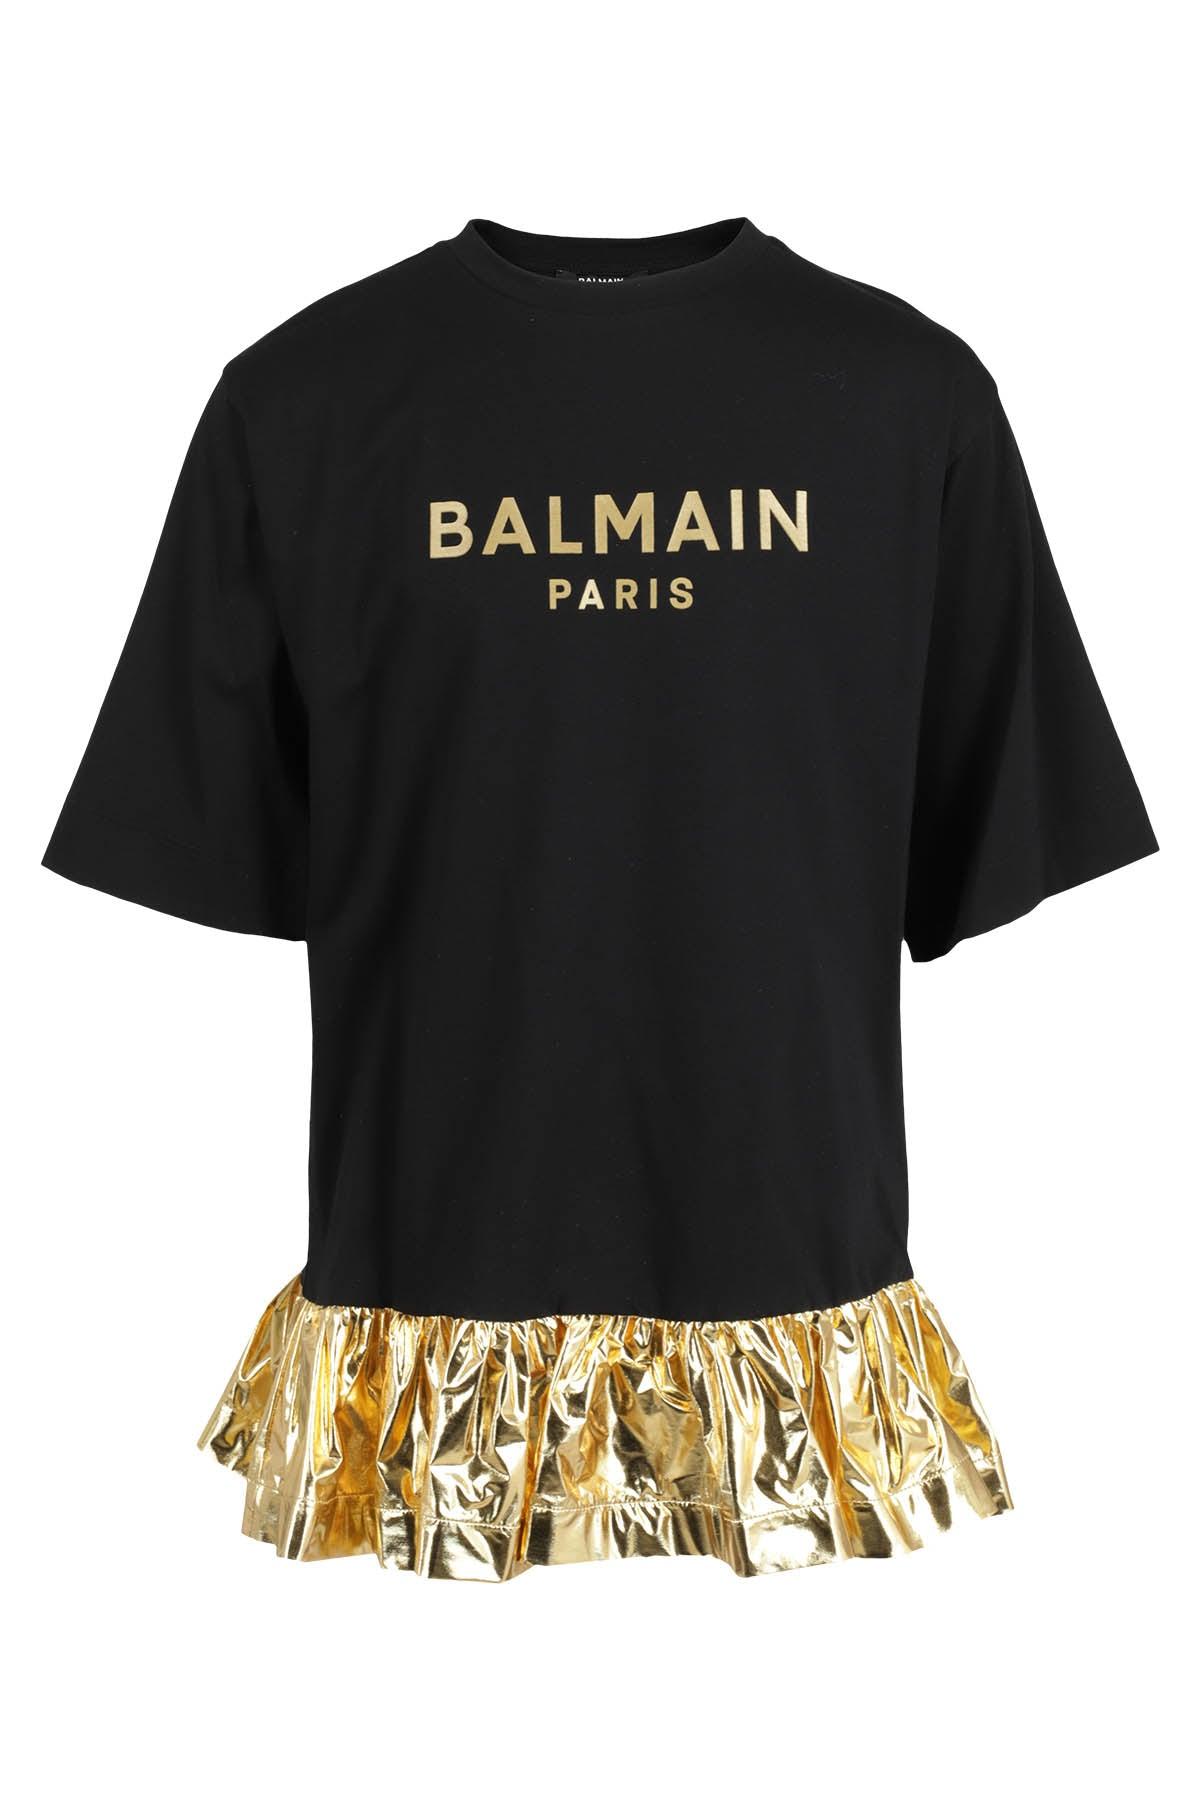 Balmain Logo Printed Crewneck T-shirt Dress